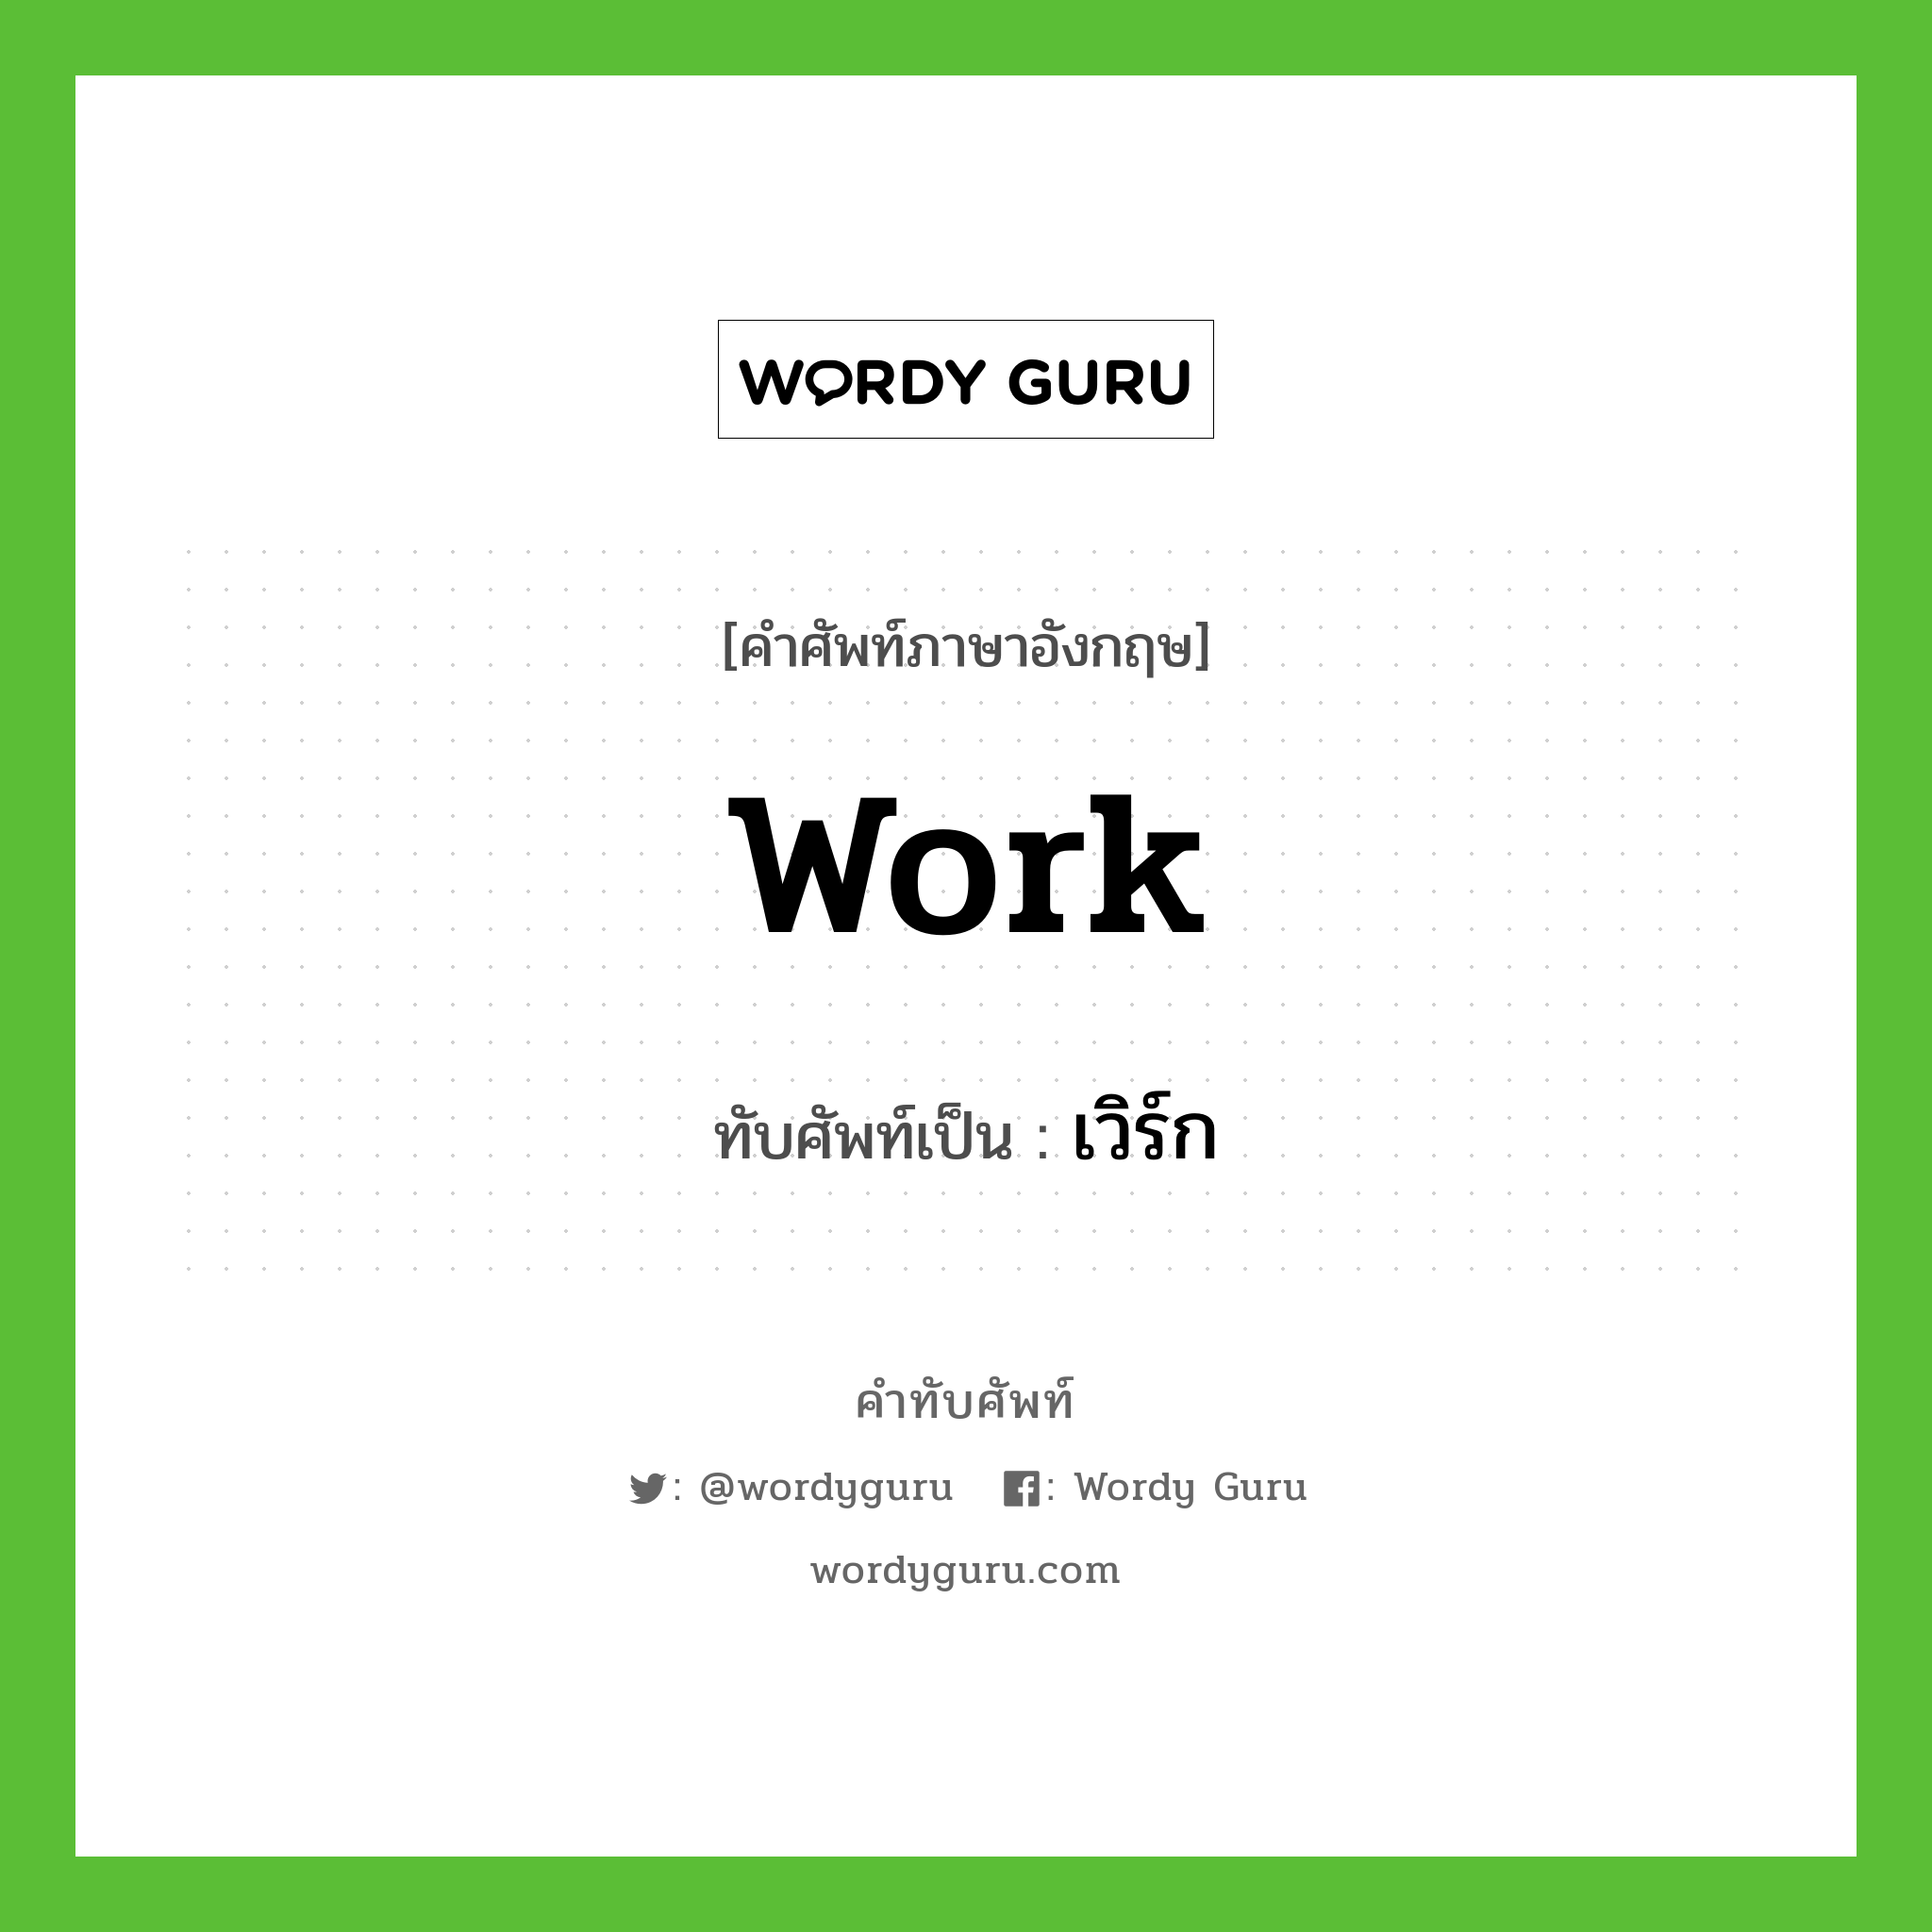 work เขียนเป็นคำไทยว่าอะไร?, คำศัพท์ภาษาอังกฤษ work ทับศัพท์เป็น เวิร์ก